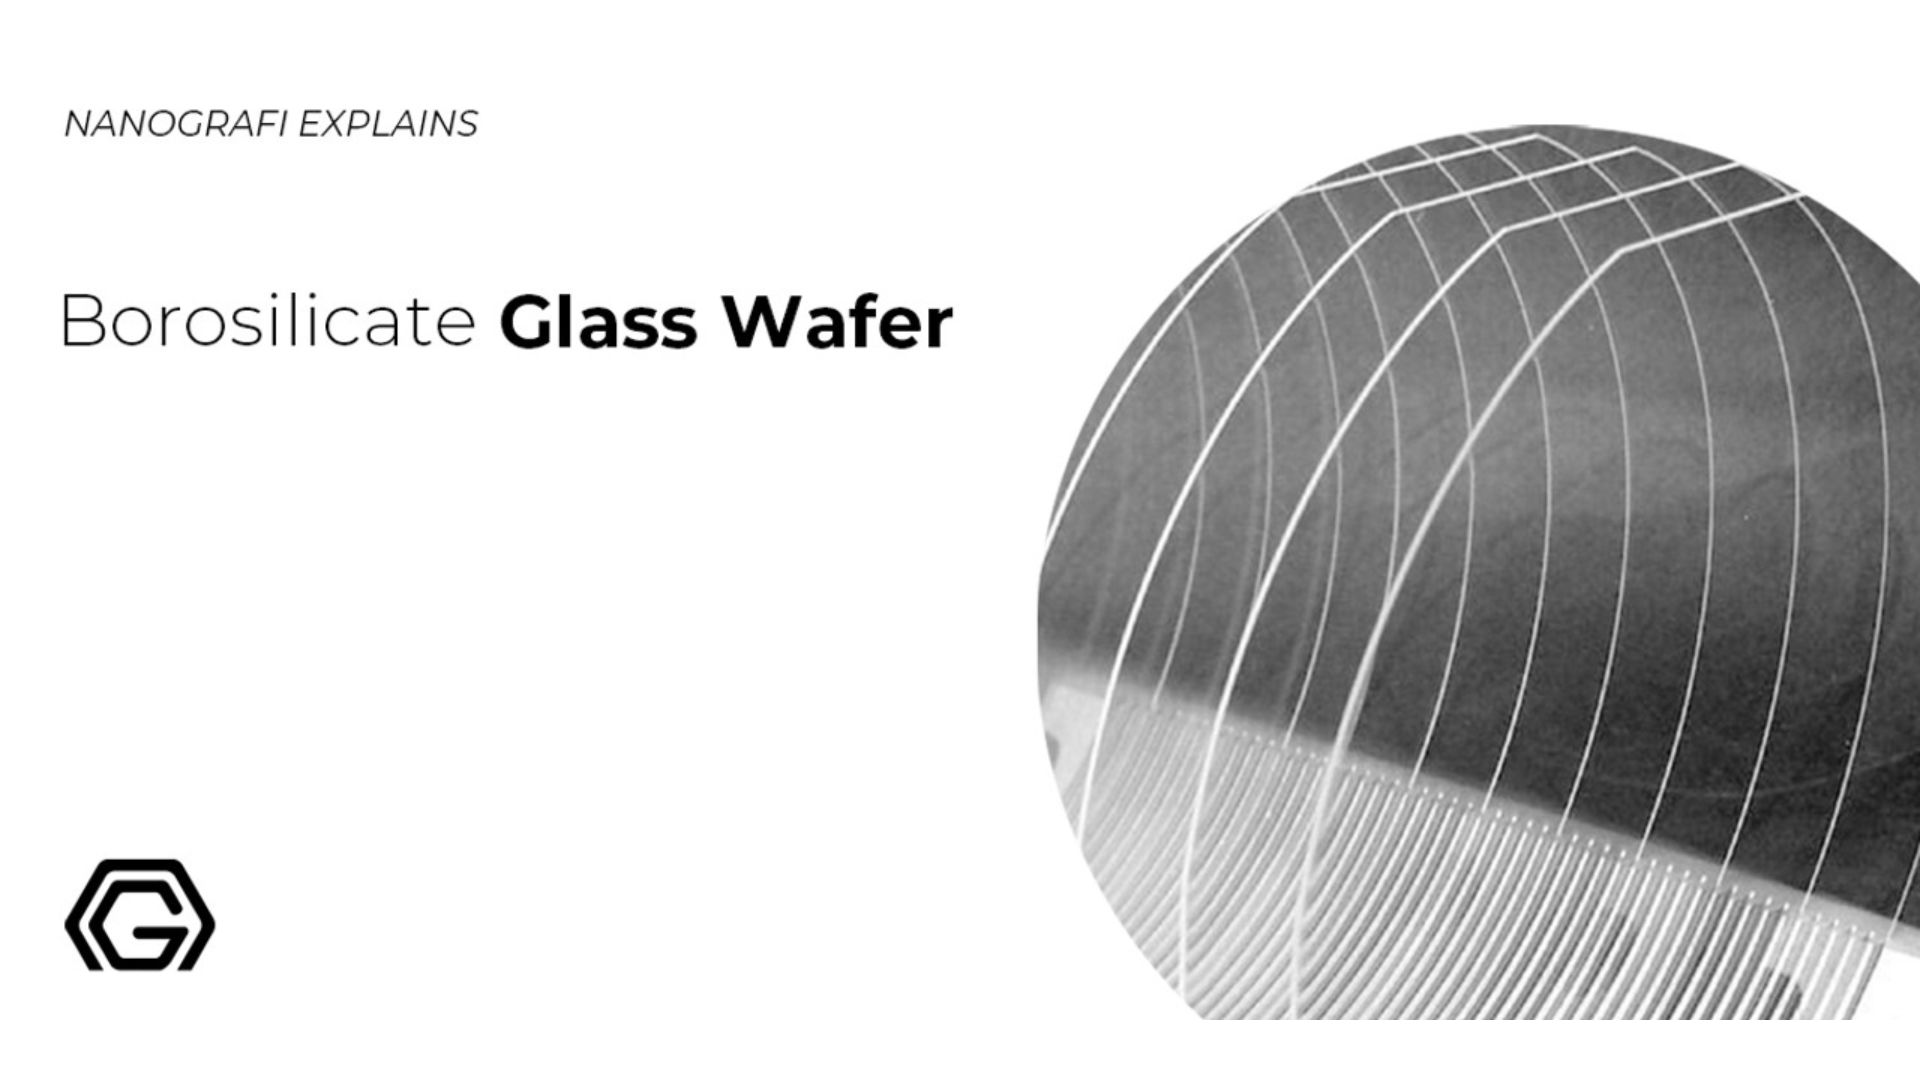 Borosilicate Glass Wafer